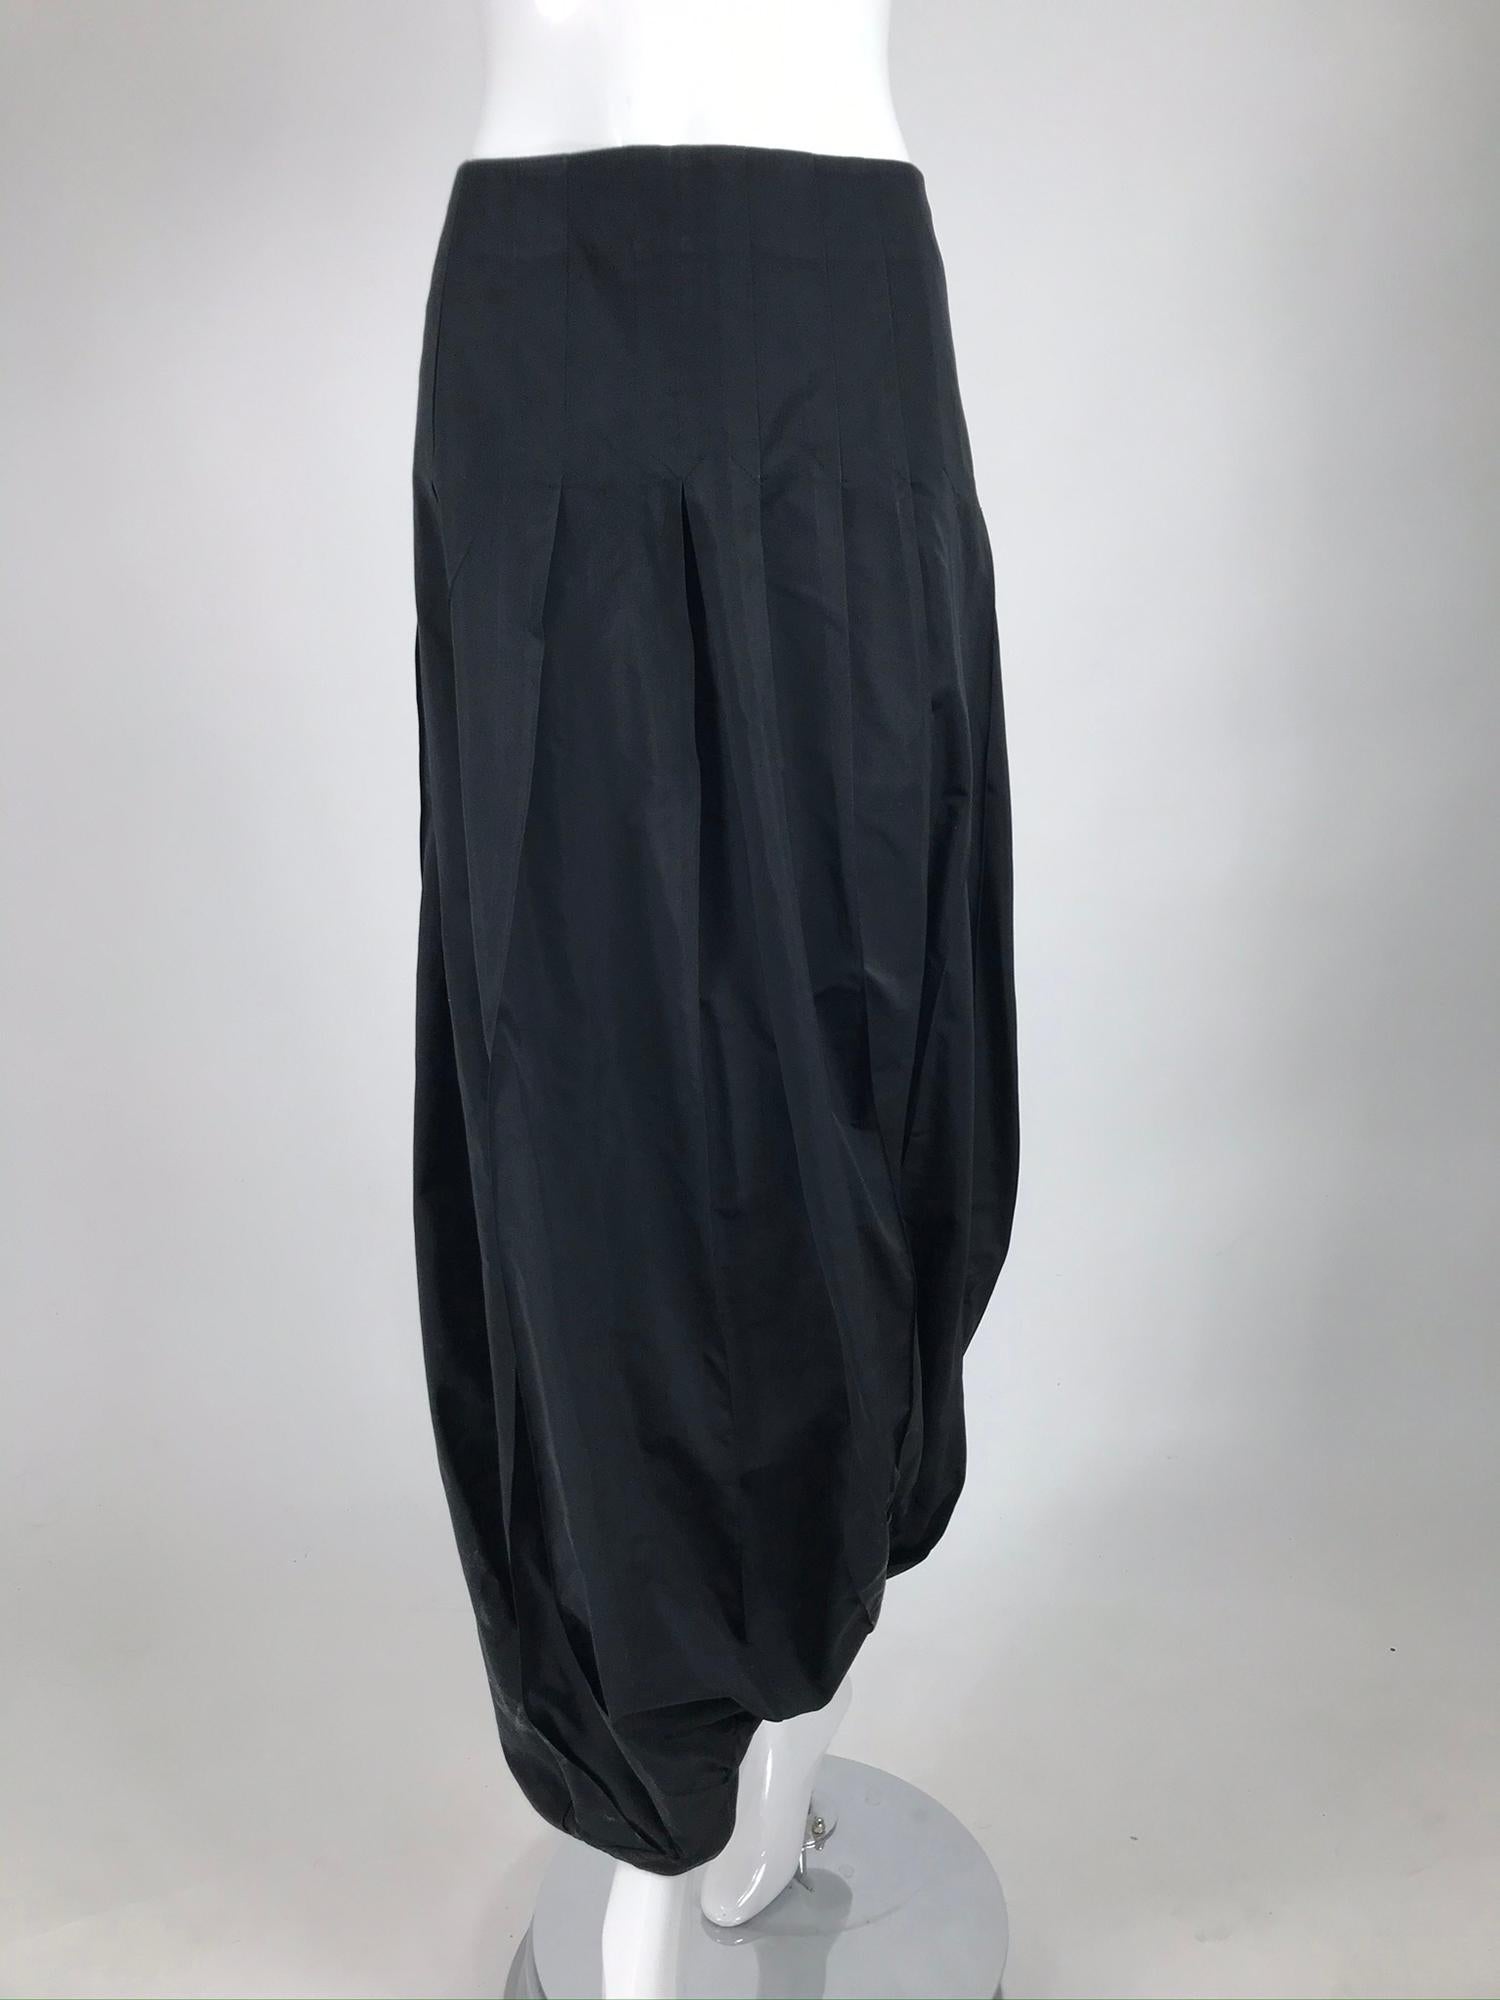 Pantalon zouave Kenzo en taffetas noir de la fin des années 1980. Le pantalon/jupe en taffetas noir mat est ajusté de la taille à la hanche par des plis inversés qui s'ouvrent complètement sur l'ourlet. La jupe est froncée à l'ourlet en une bande